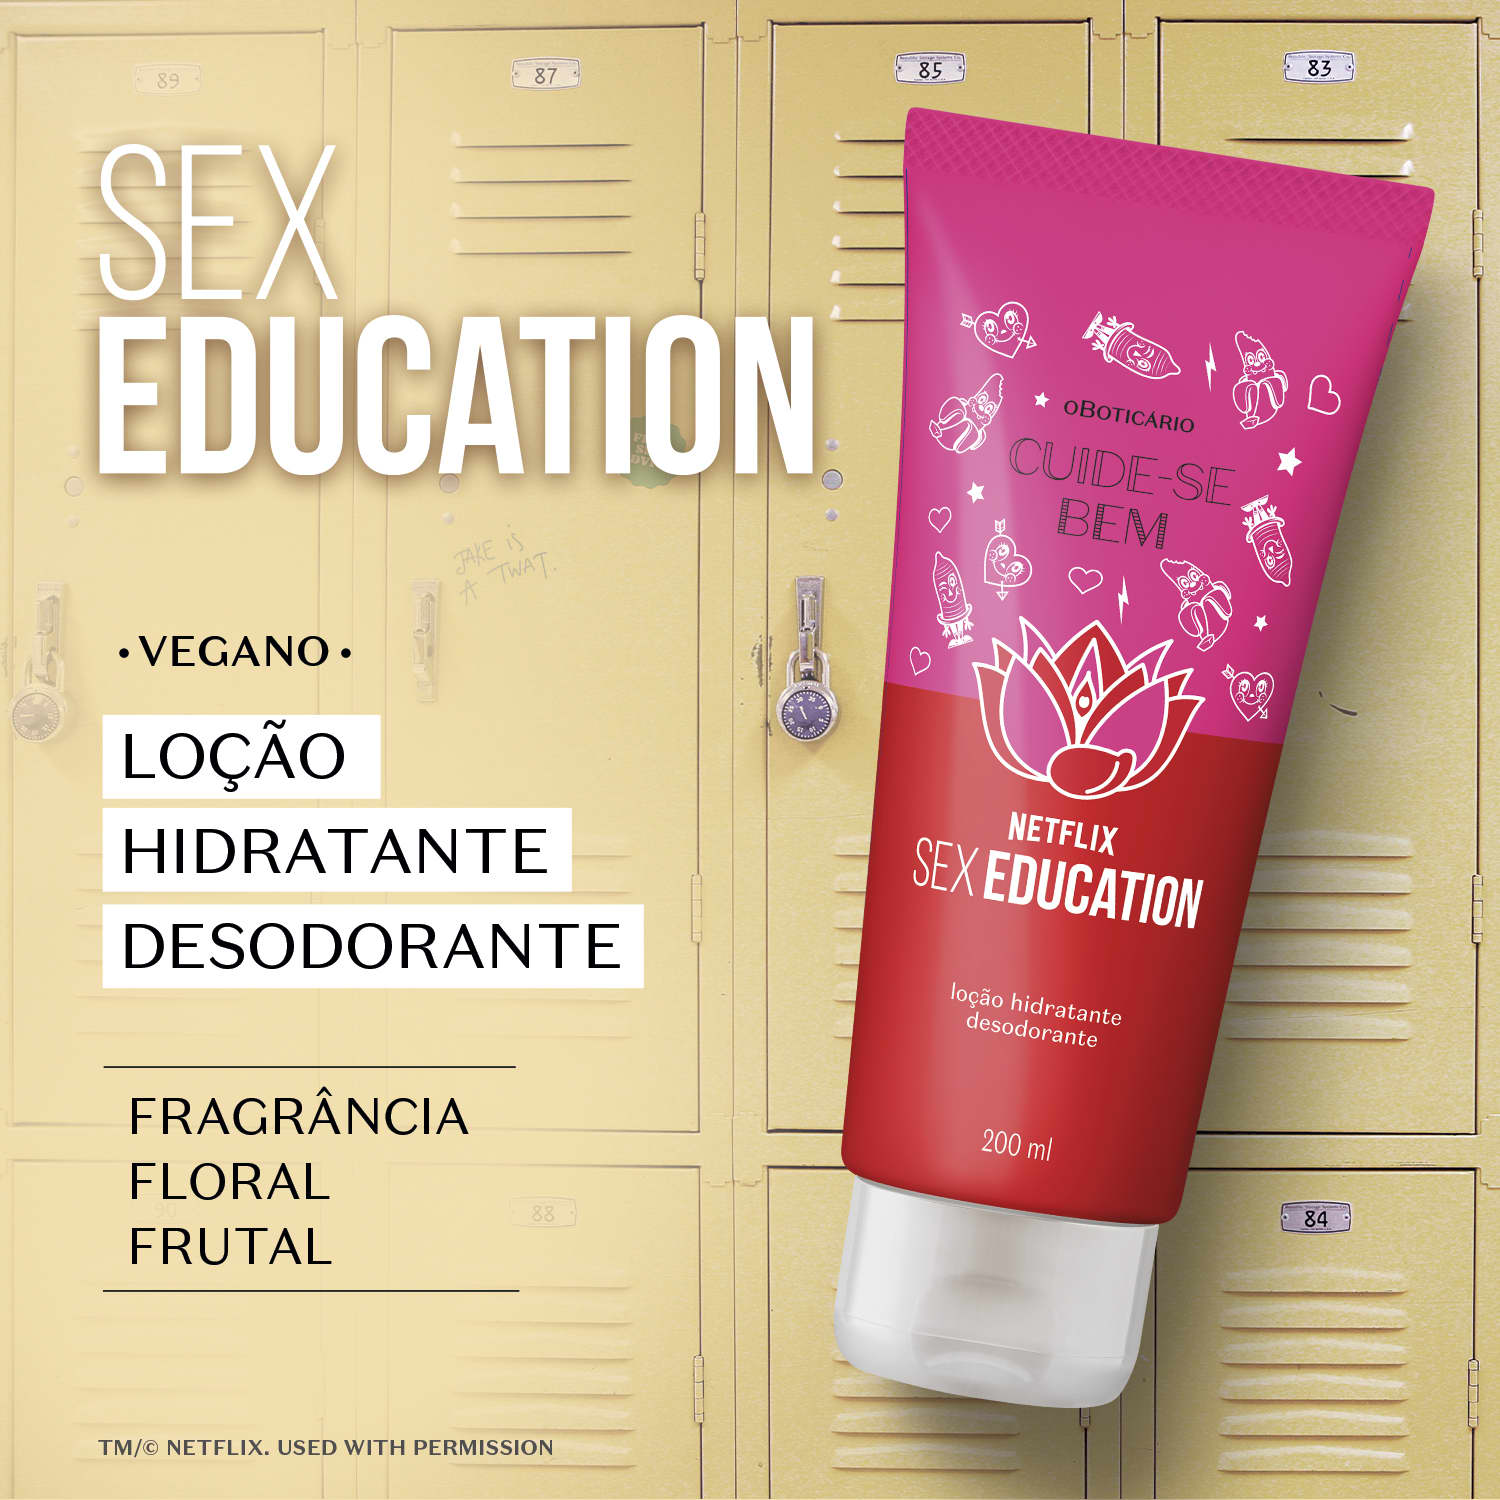 Loção Hidratante Desodorante Cuide Se Bem Netflix Sex Education 200ml 9671